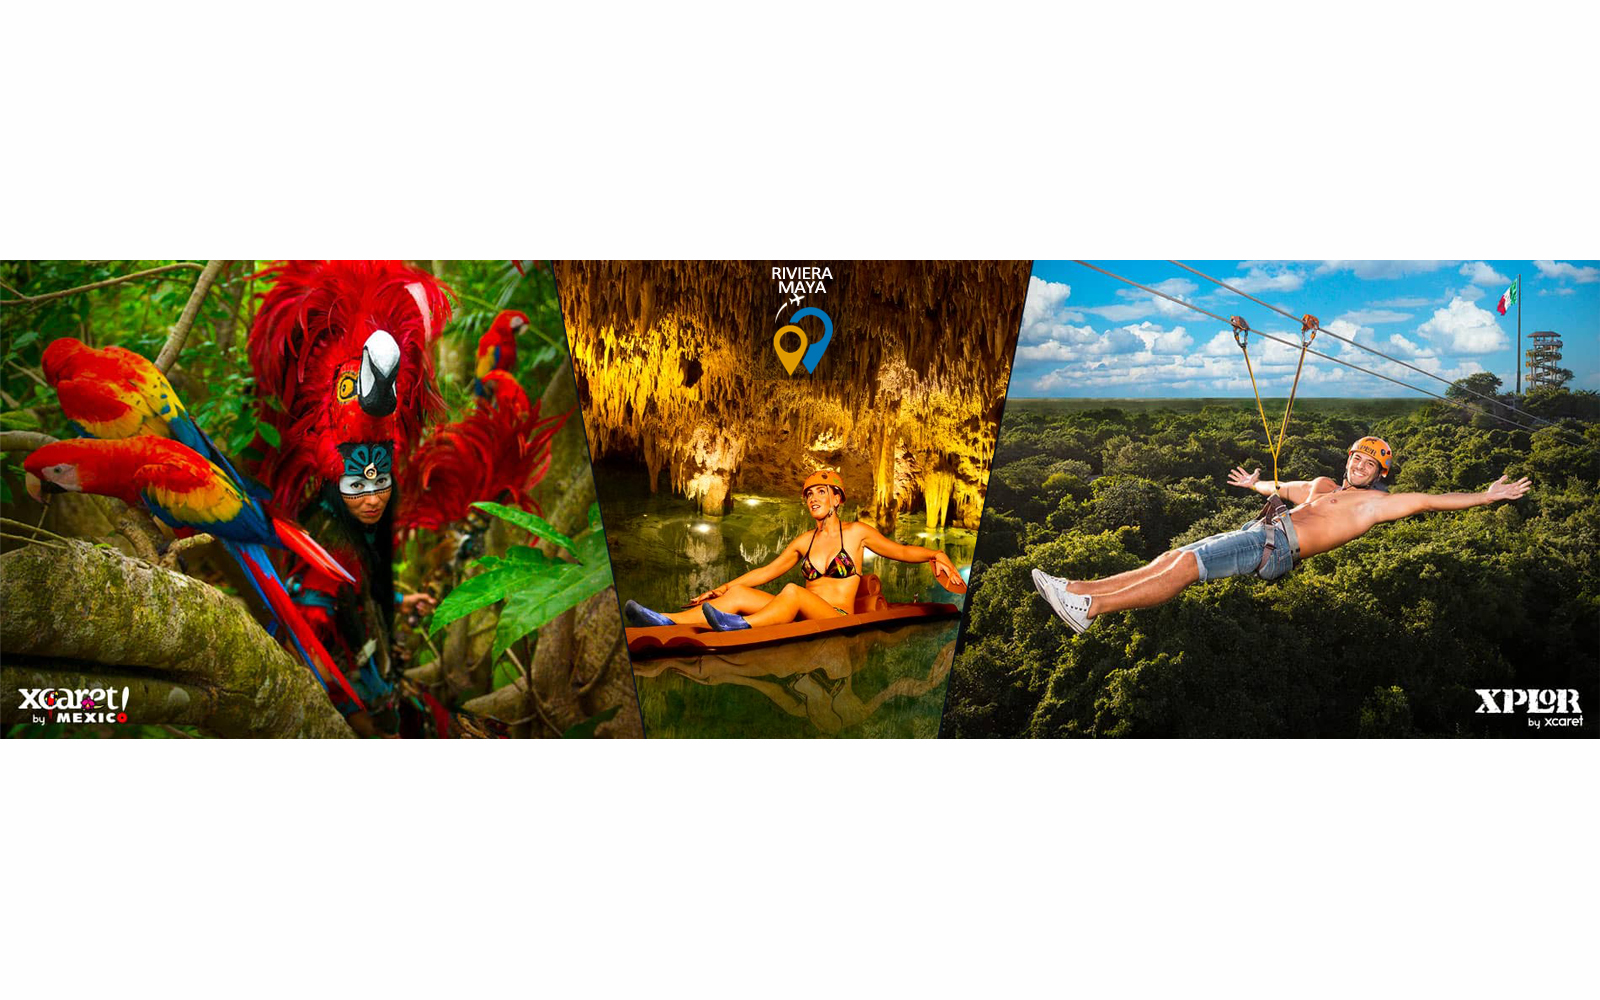 Aventure dans les parcs écologiques Riviera Maya